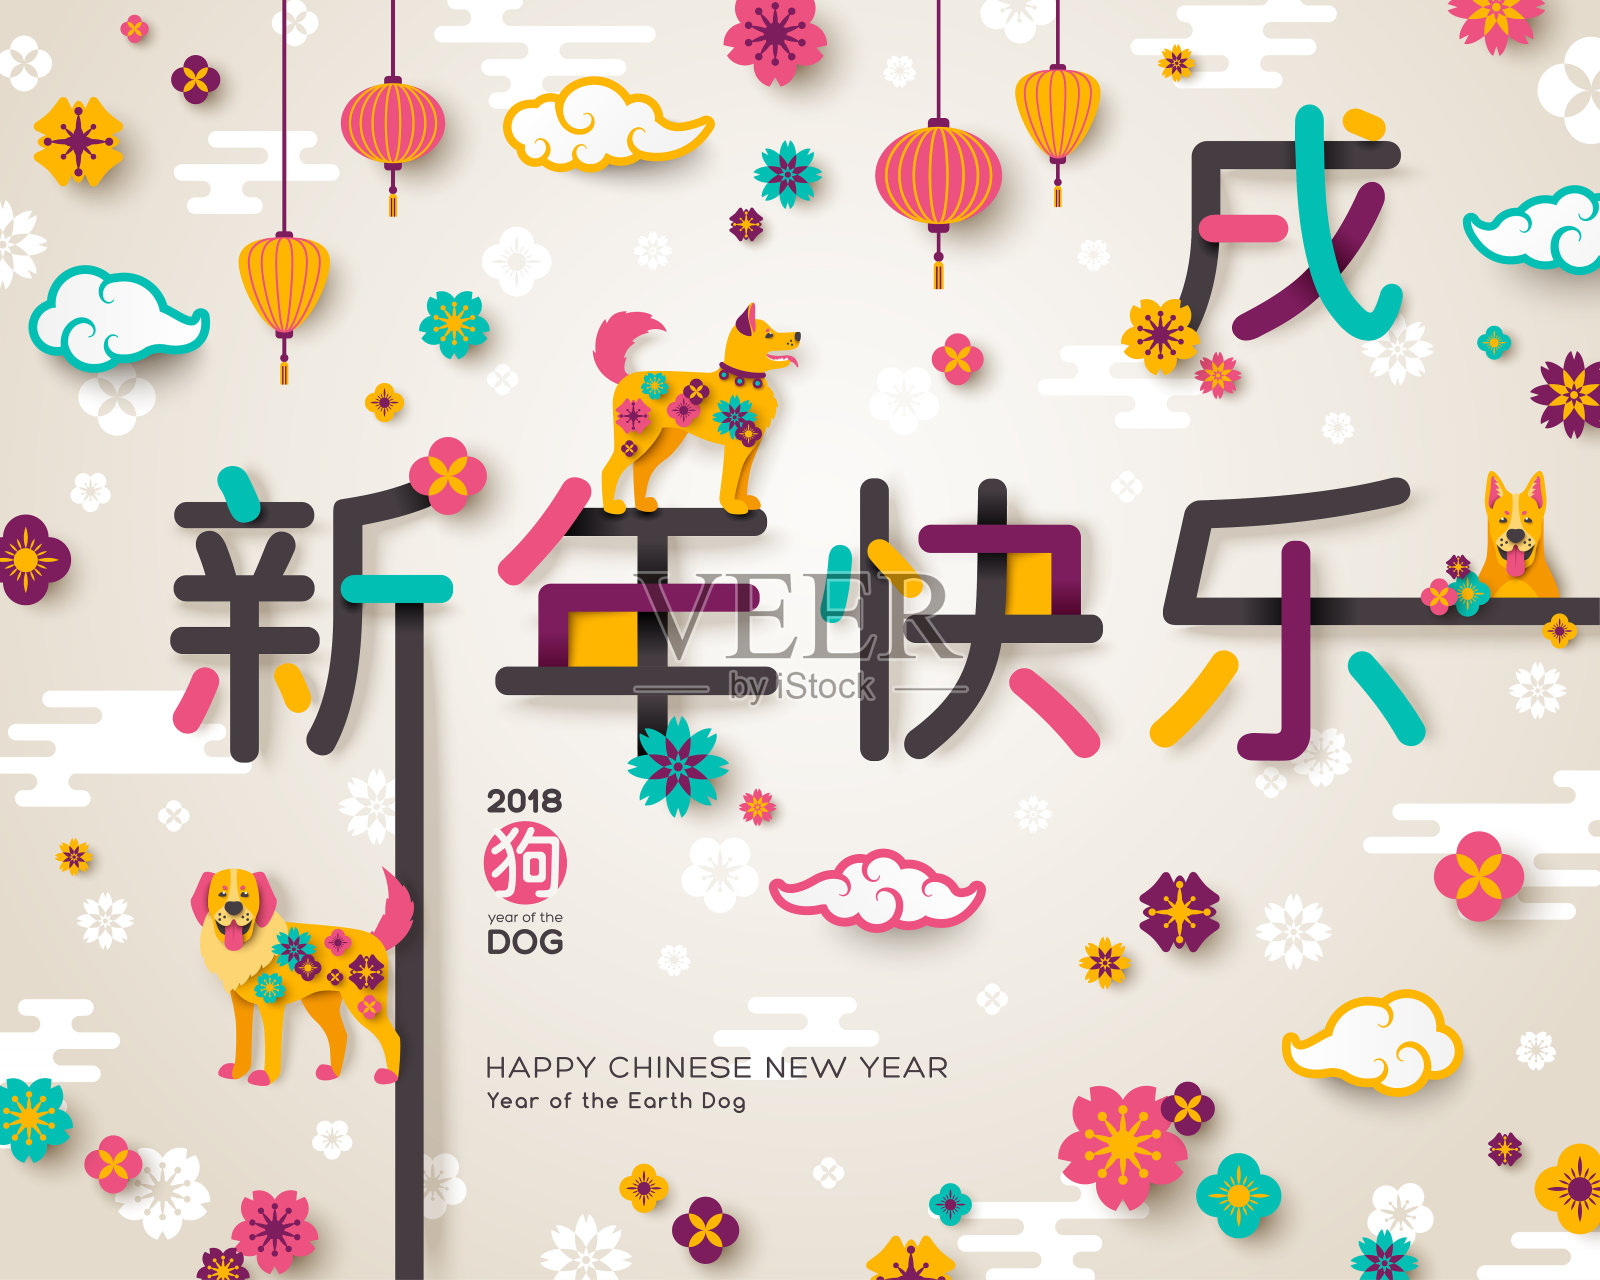 2018中国象形文字贺卡新年快乐设计模板素材